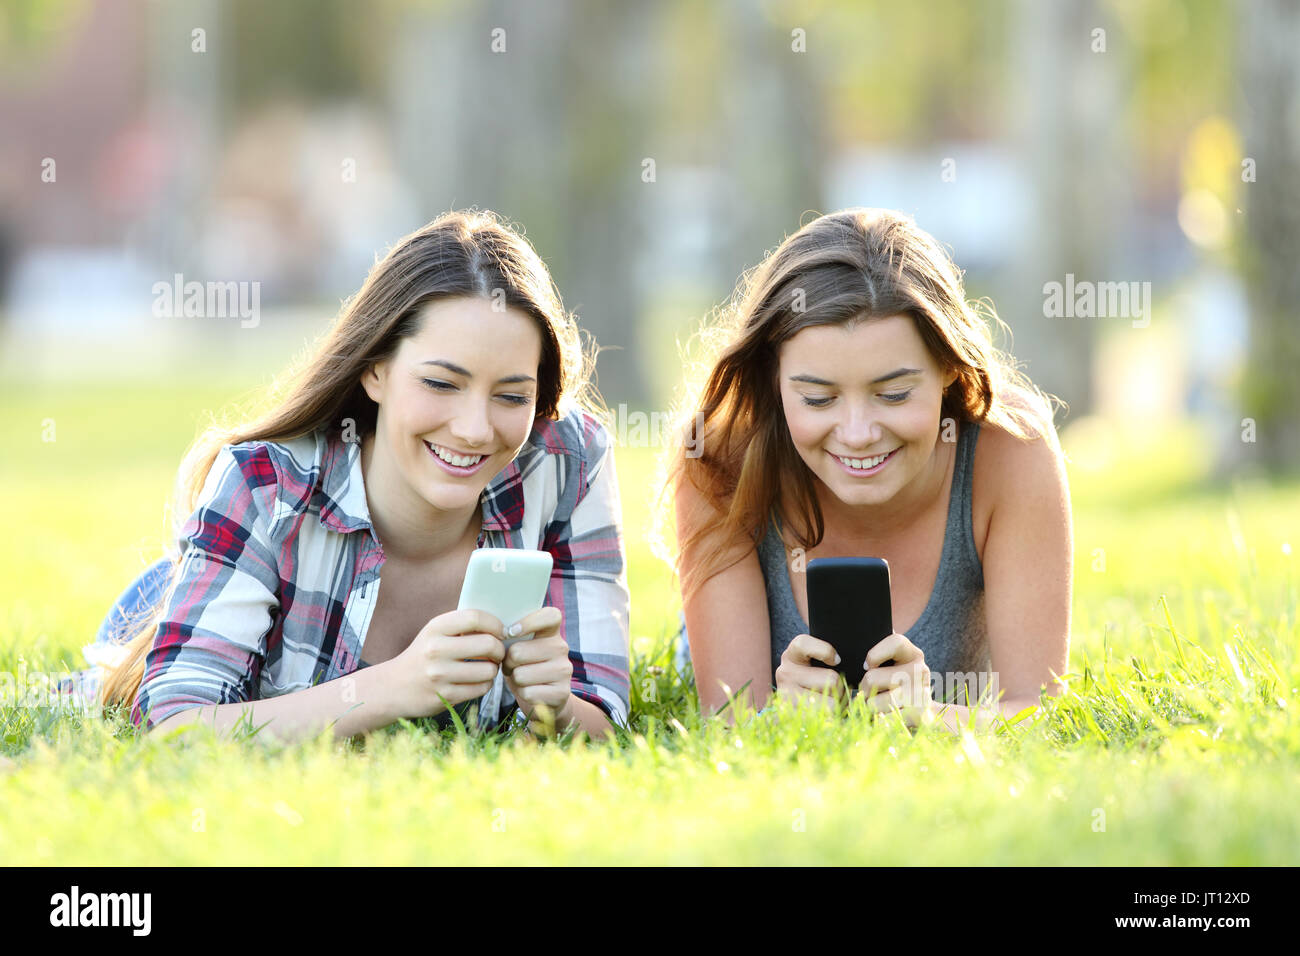 Vorderansicht des zwei glückliche Freunde über ihre Smartphones auf dem Gras in einem Park Stockfoto